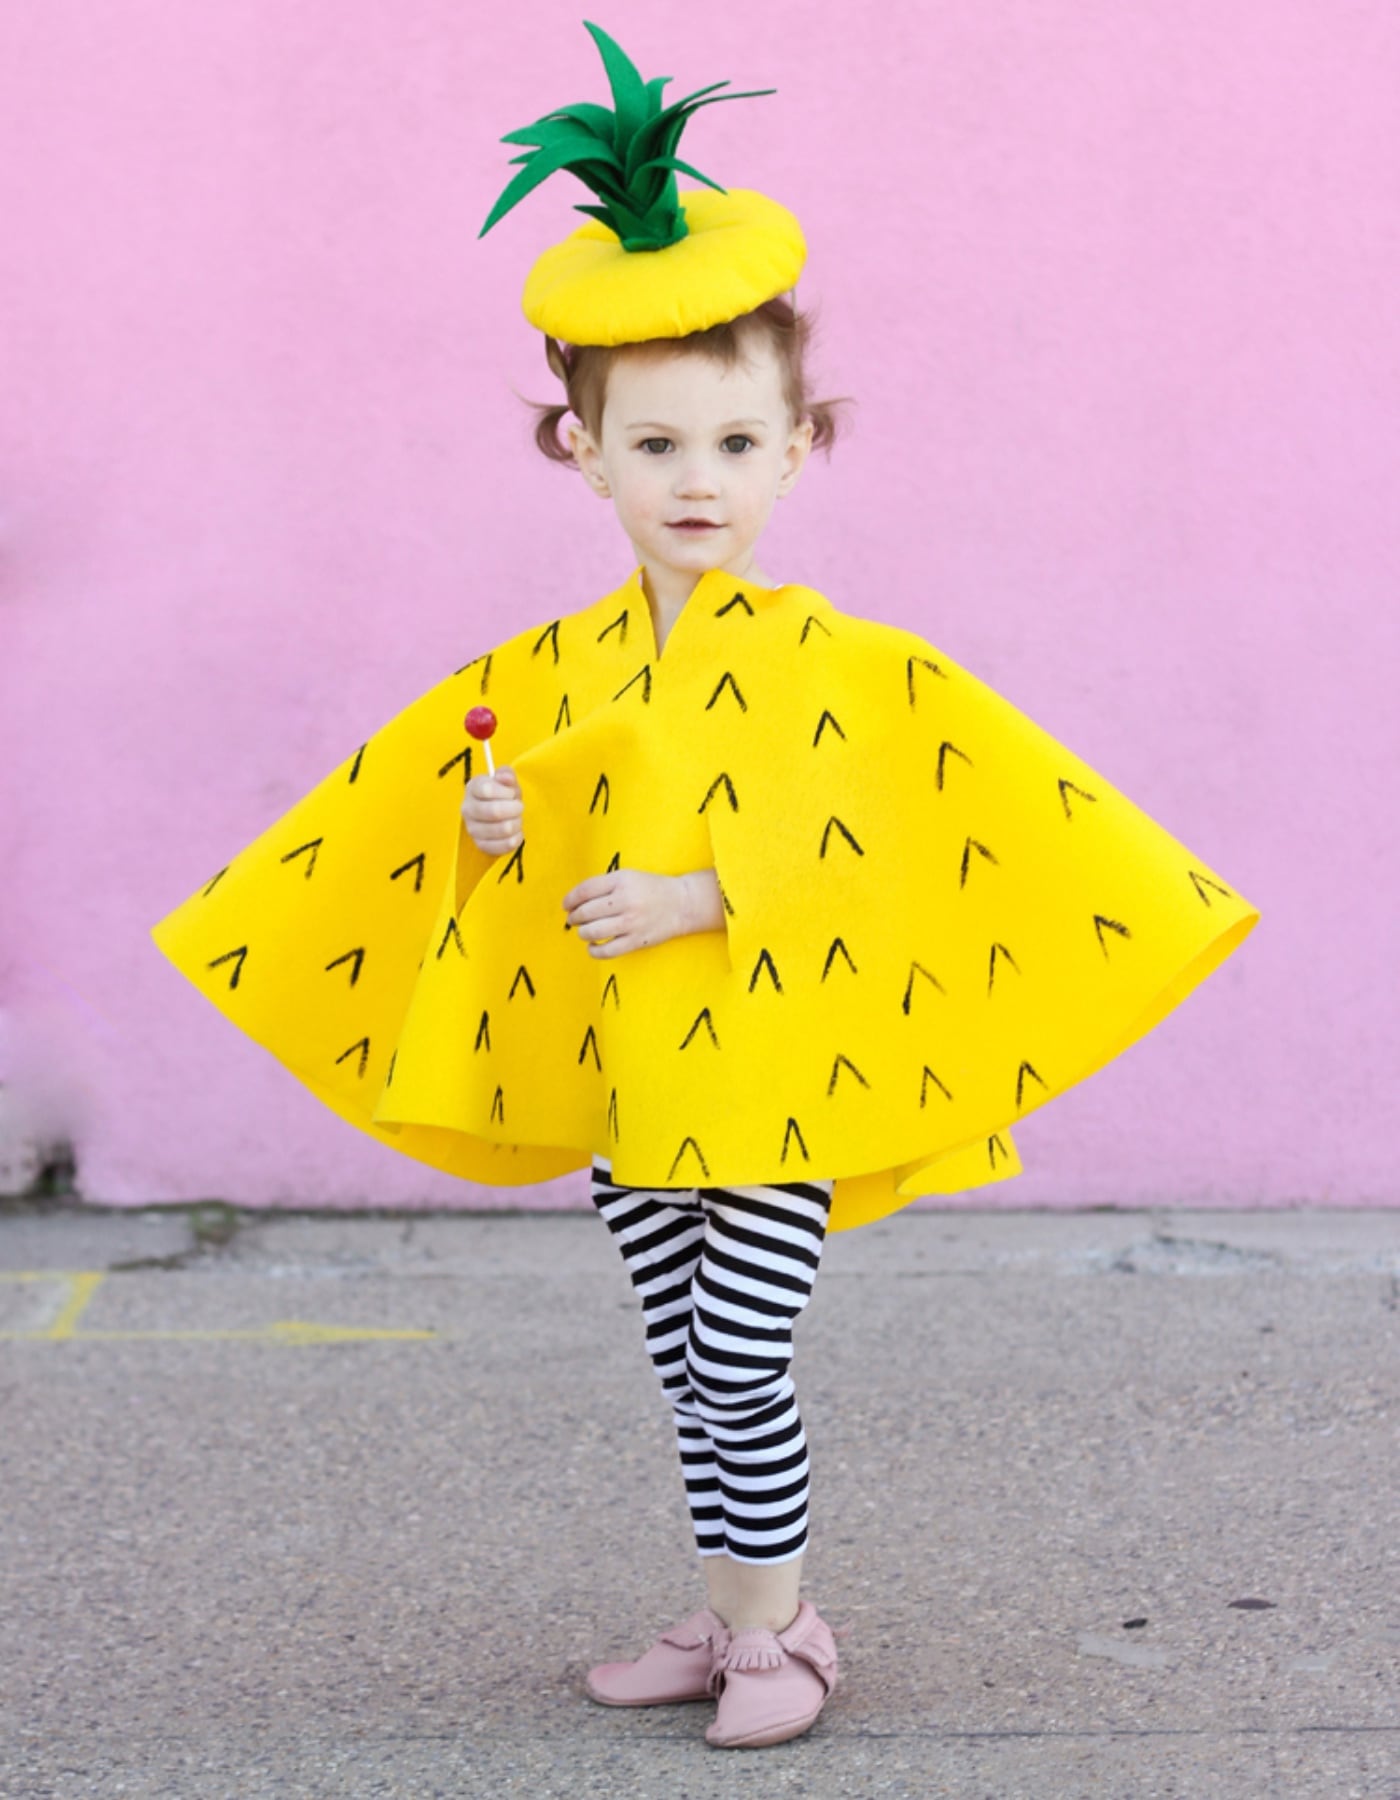 DIY-Verkleidung: Ananas-Kostüm für Kinder basteln, ohne Nähen // HIMBEER